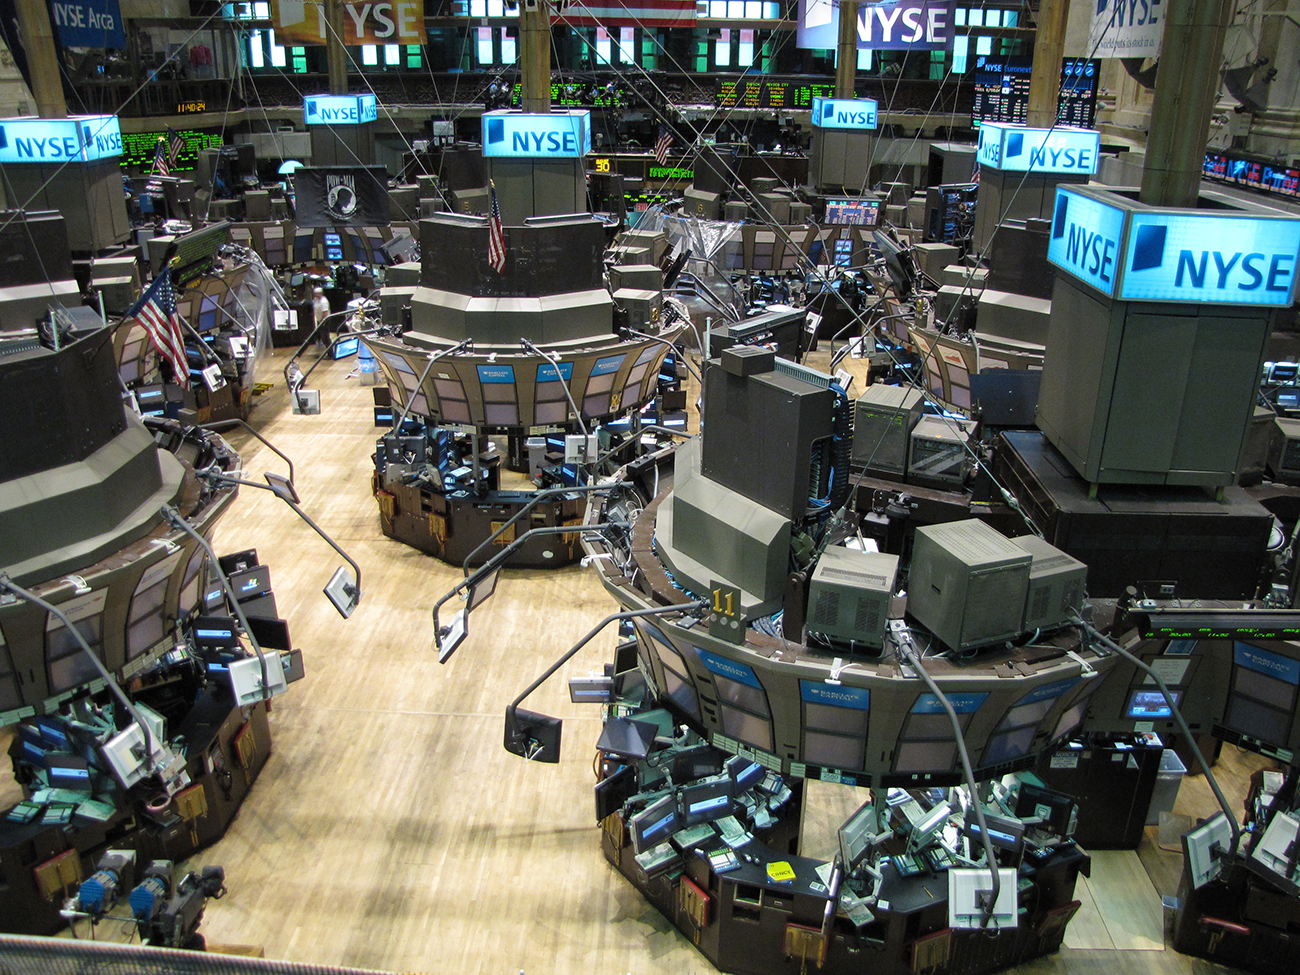 一张照片显示了纽约证券交易所。 室内区域有许多终端，每个终端都覆盖着计算机和显示屏。 后台有显示股票和价格的屏幕。